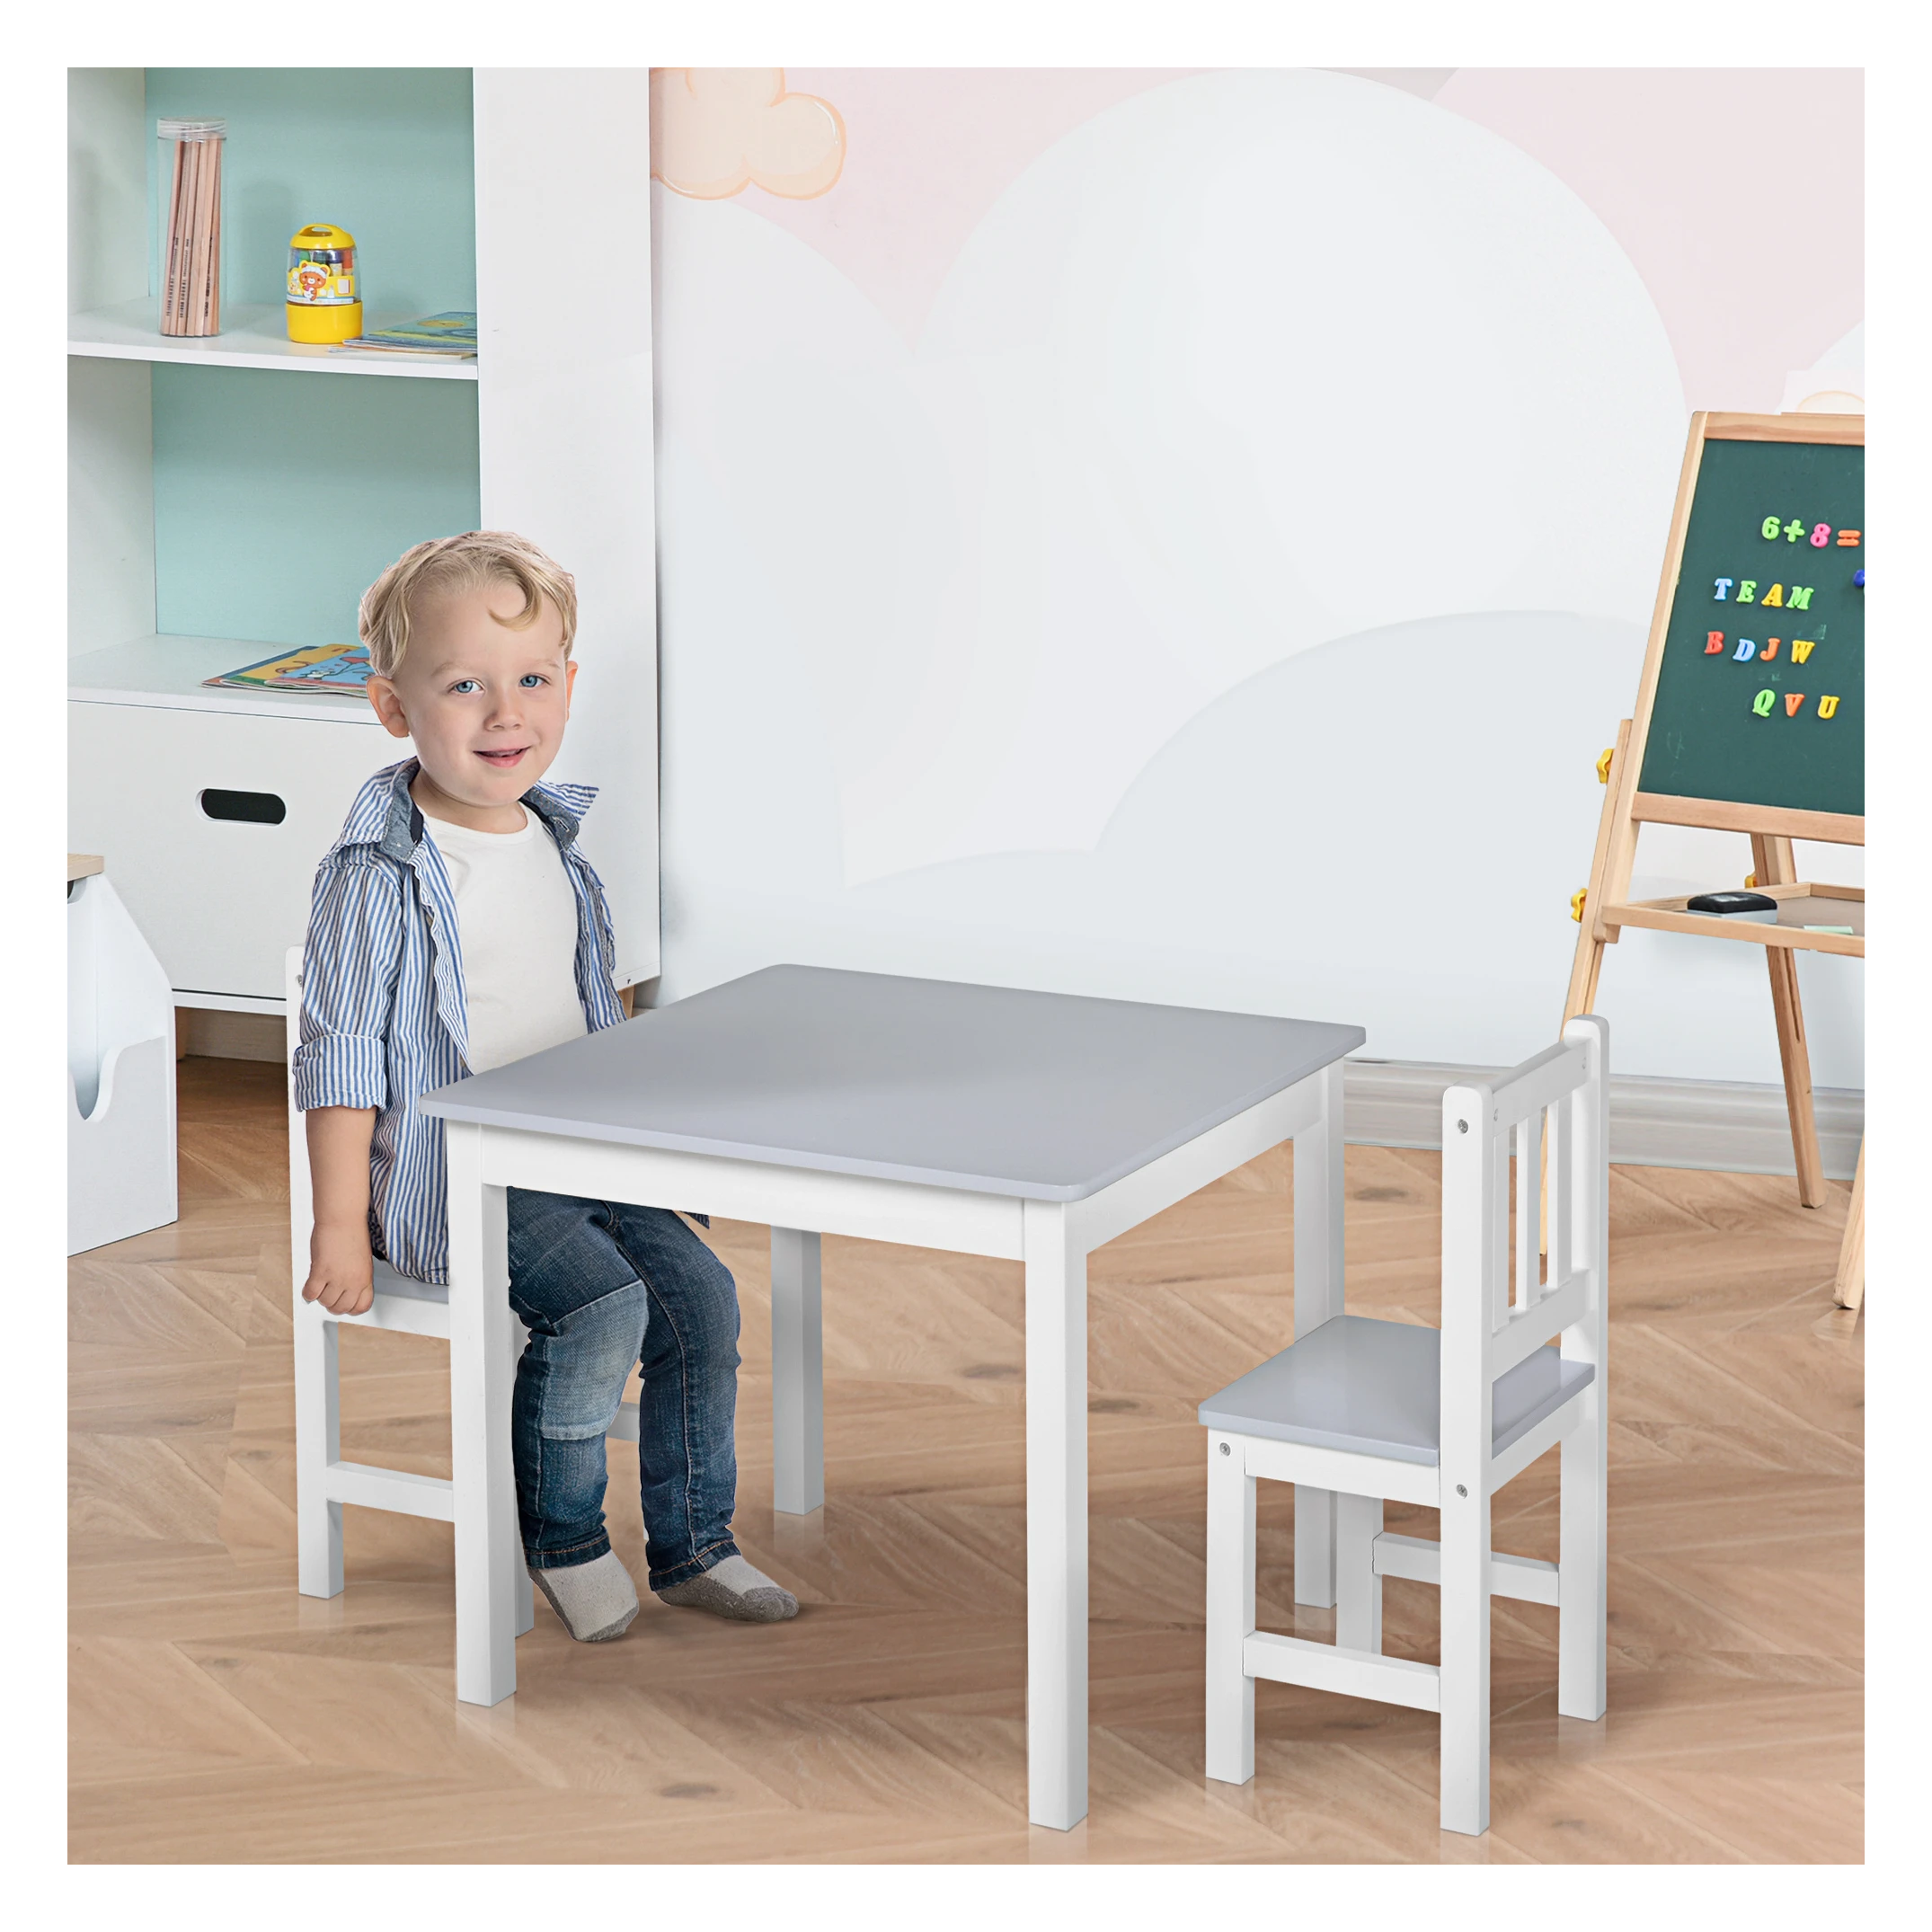 Mortal Regeneratief Kiezen 3-delige kinderzitgroep met kindertafel 2 stoelen voor 3+ kindermeubels  grenen + MDF grijs + wit 60 x 50 x 48 cm - SimpleDeal.nl